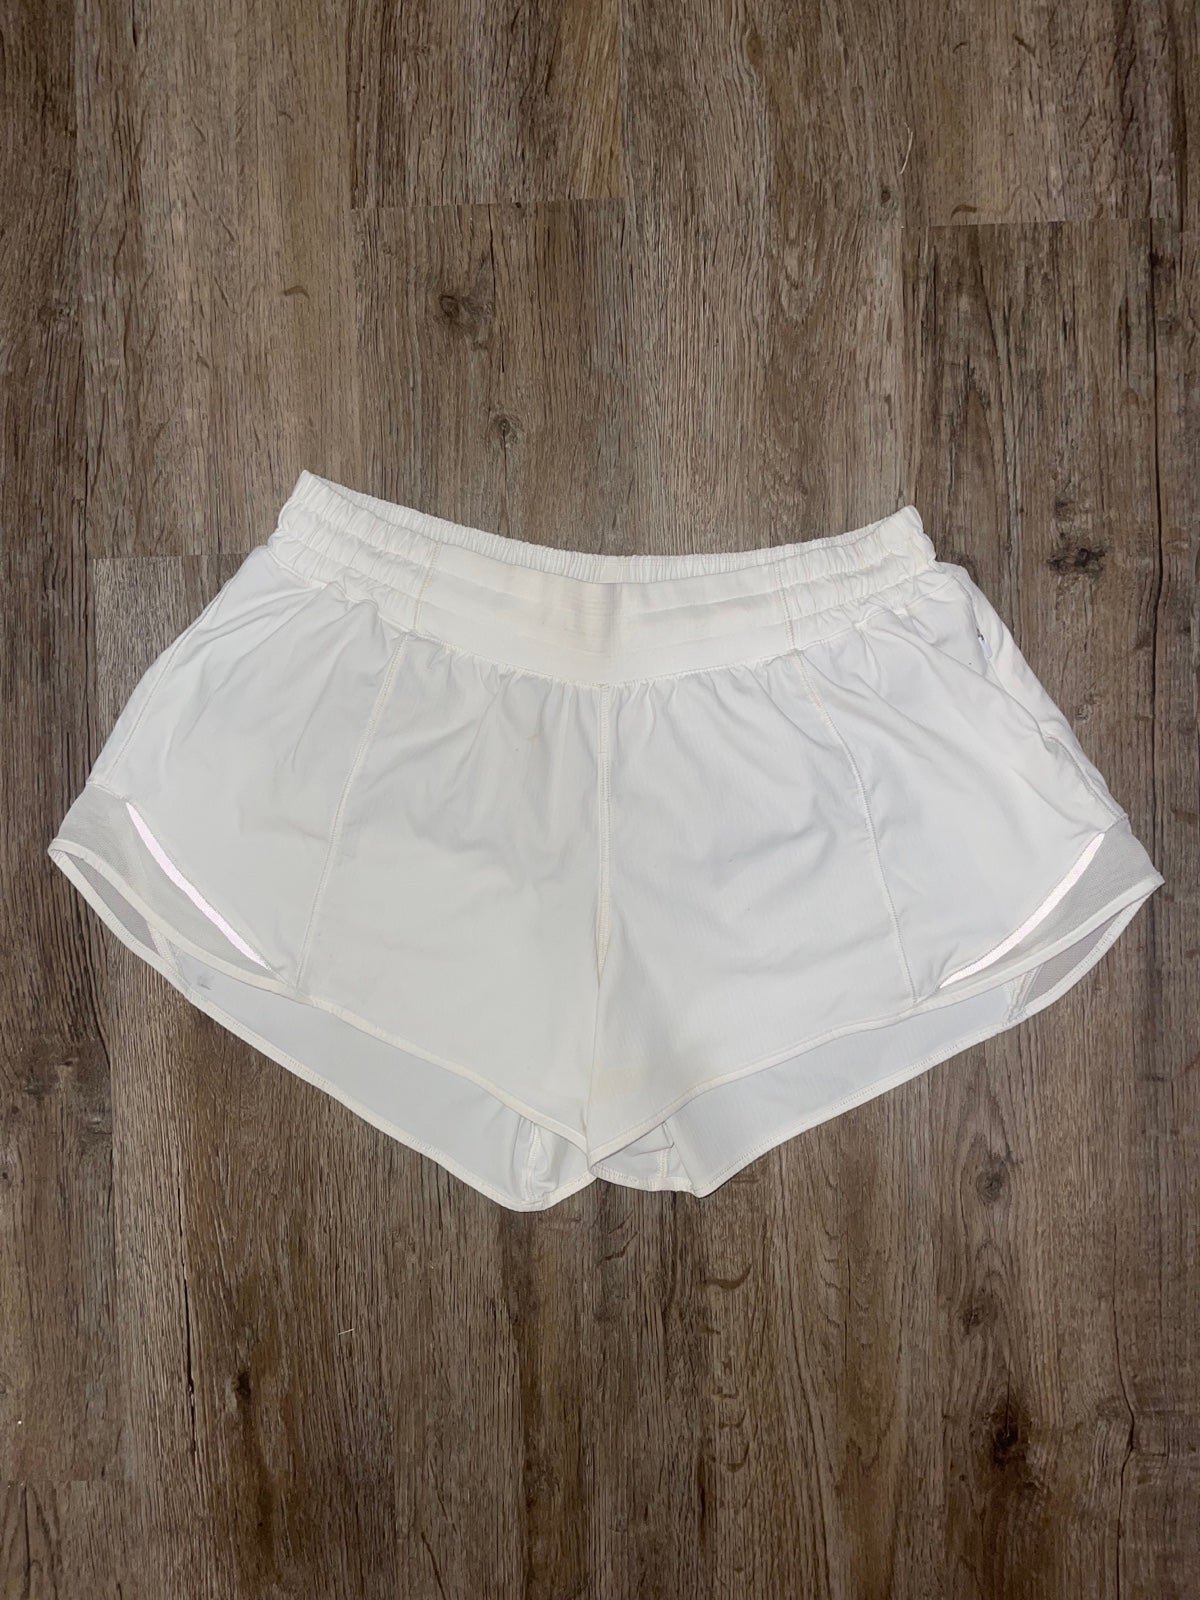 Popular White Lululemon Hotty Hot Shorts LR 4” Size 10 